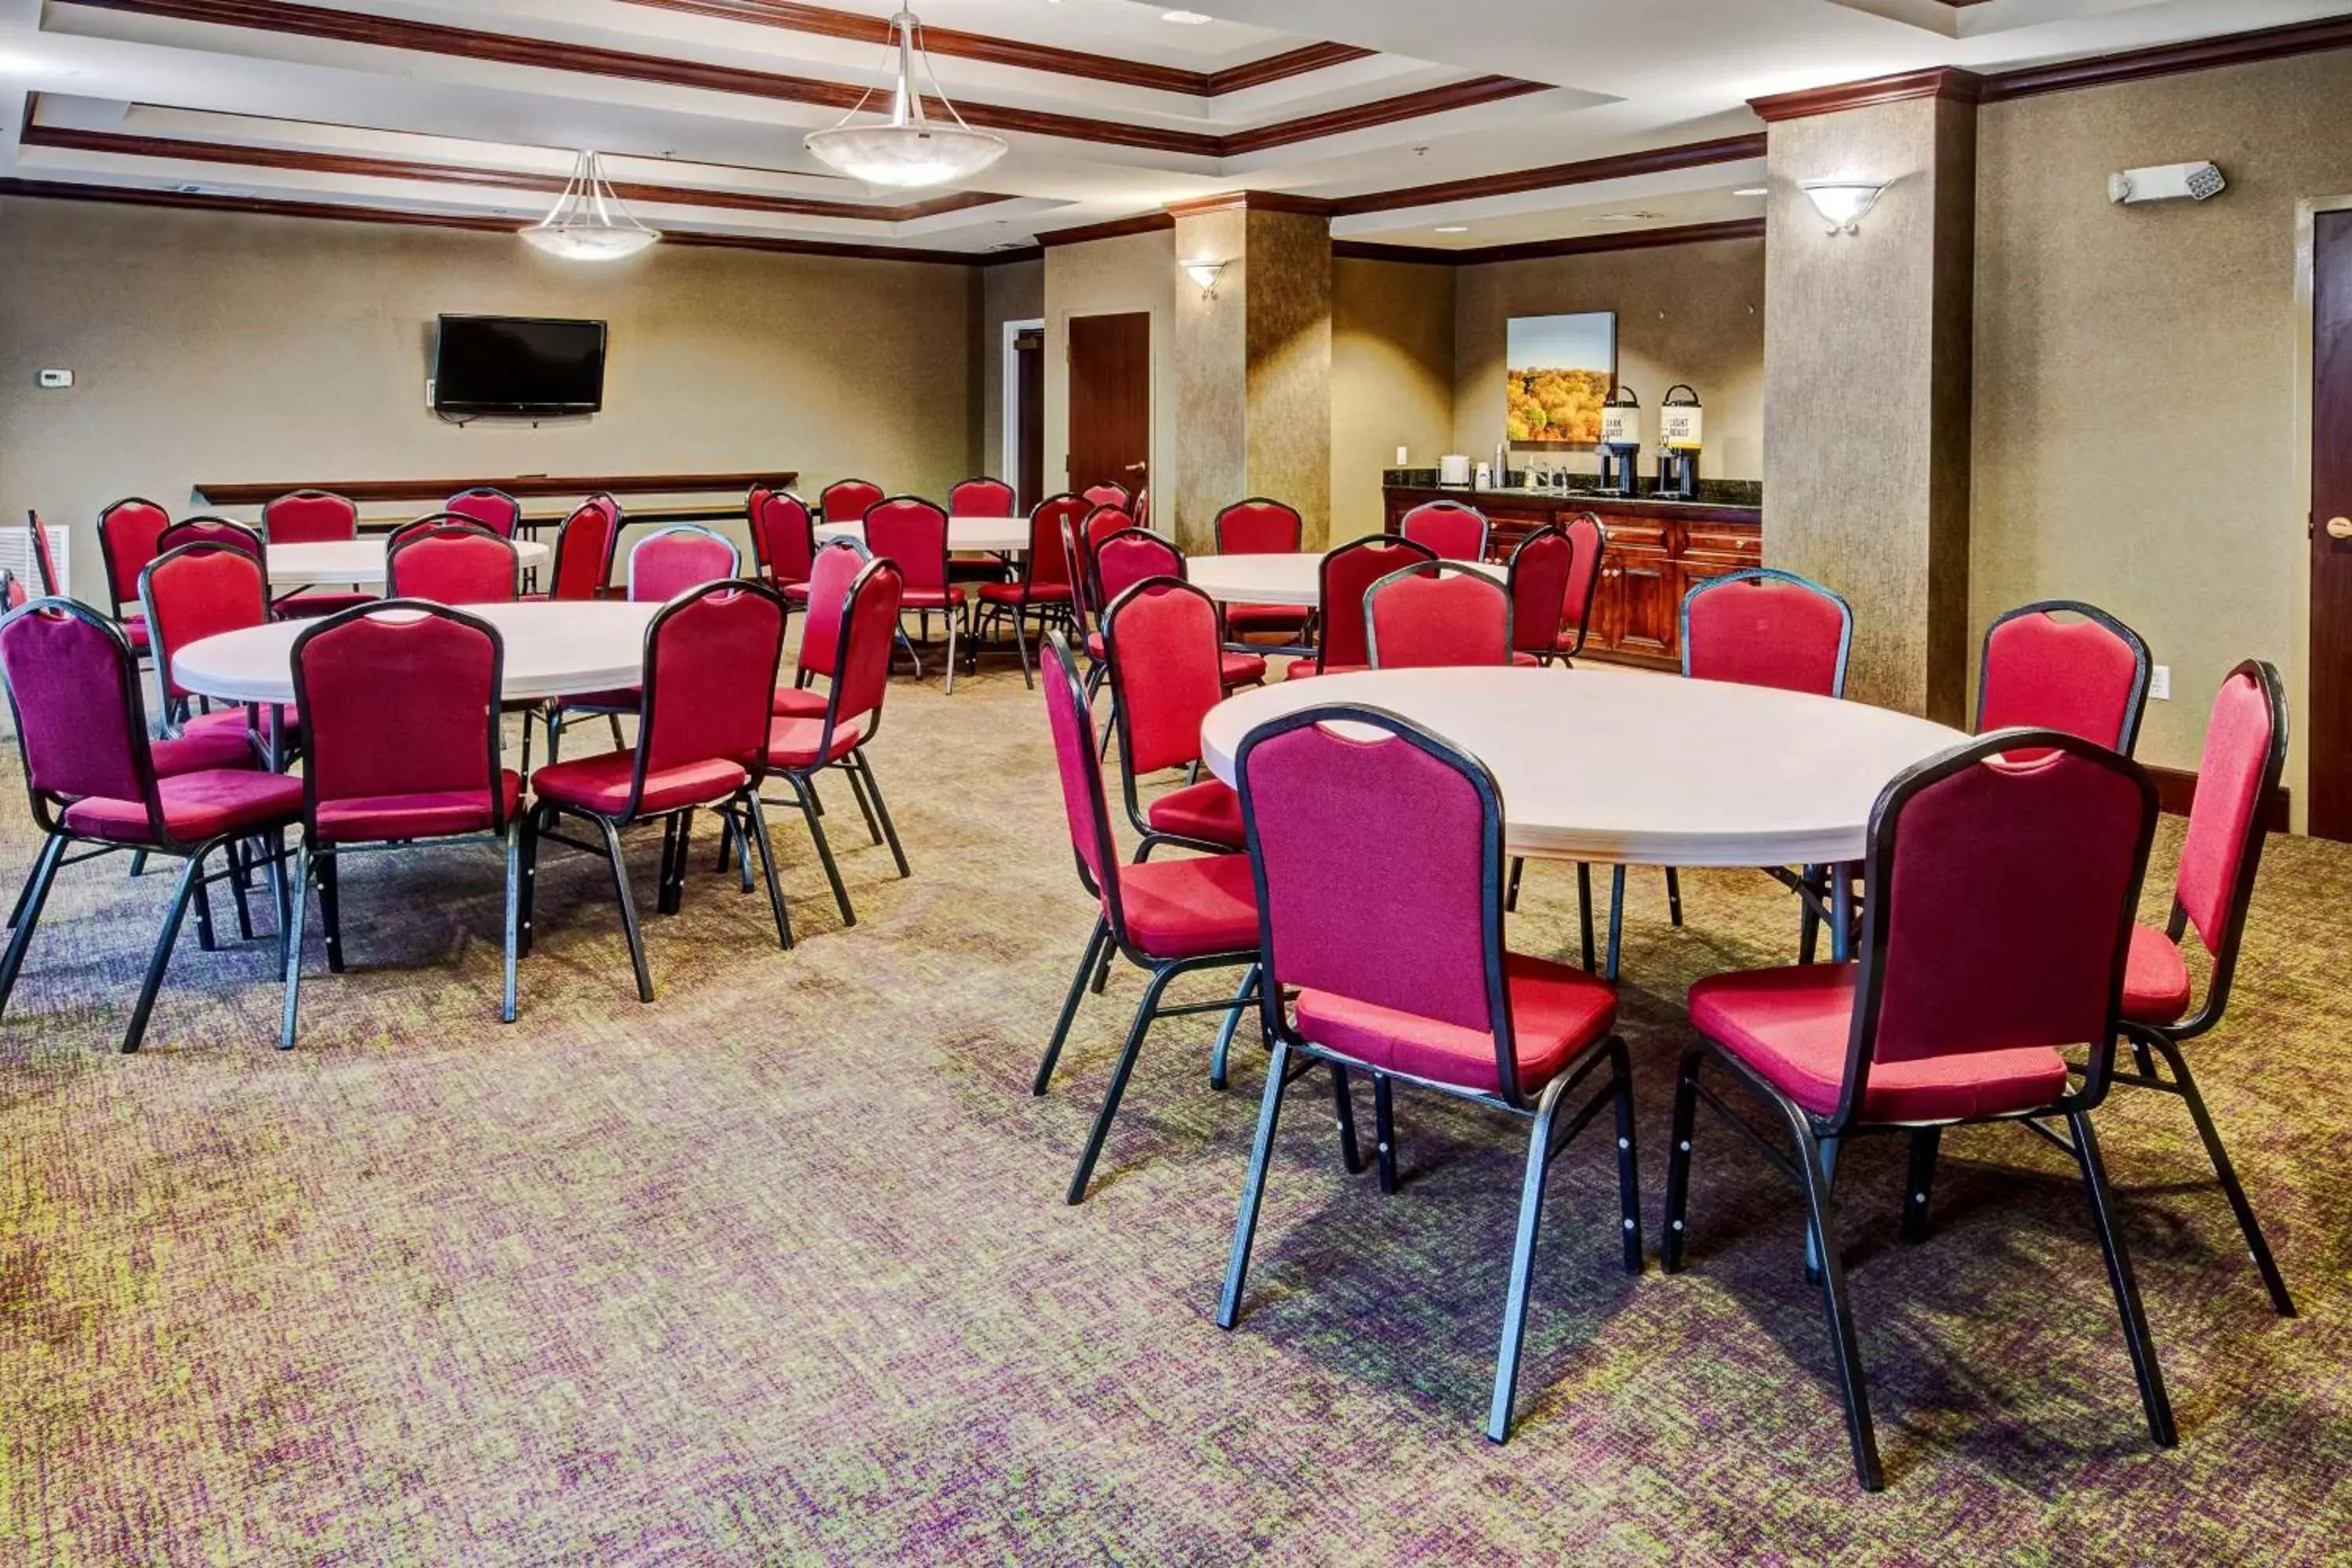 Meeting/conference room, Restaurant/Places to Eat in Hampton Inn Van Buren